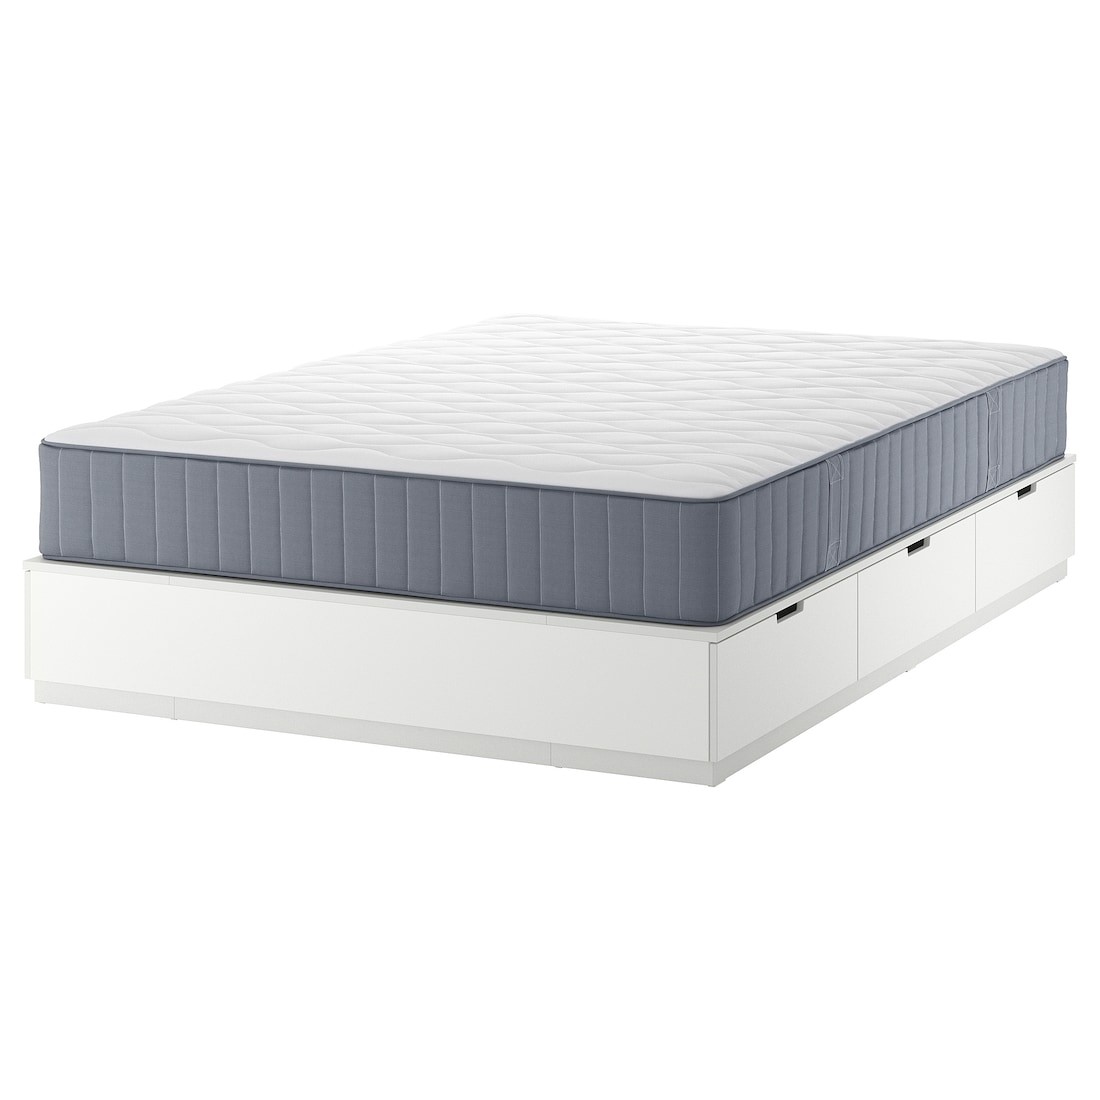 NORDLI Кровать с контейнером и матрасом, белый / Vågstranda средней жесткости, 160x200 см